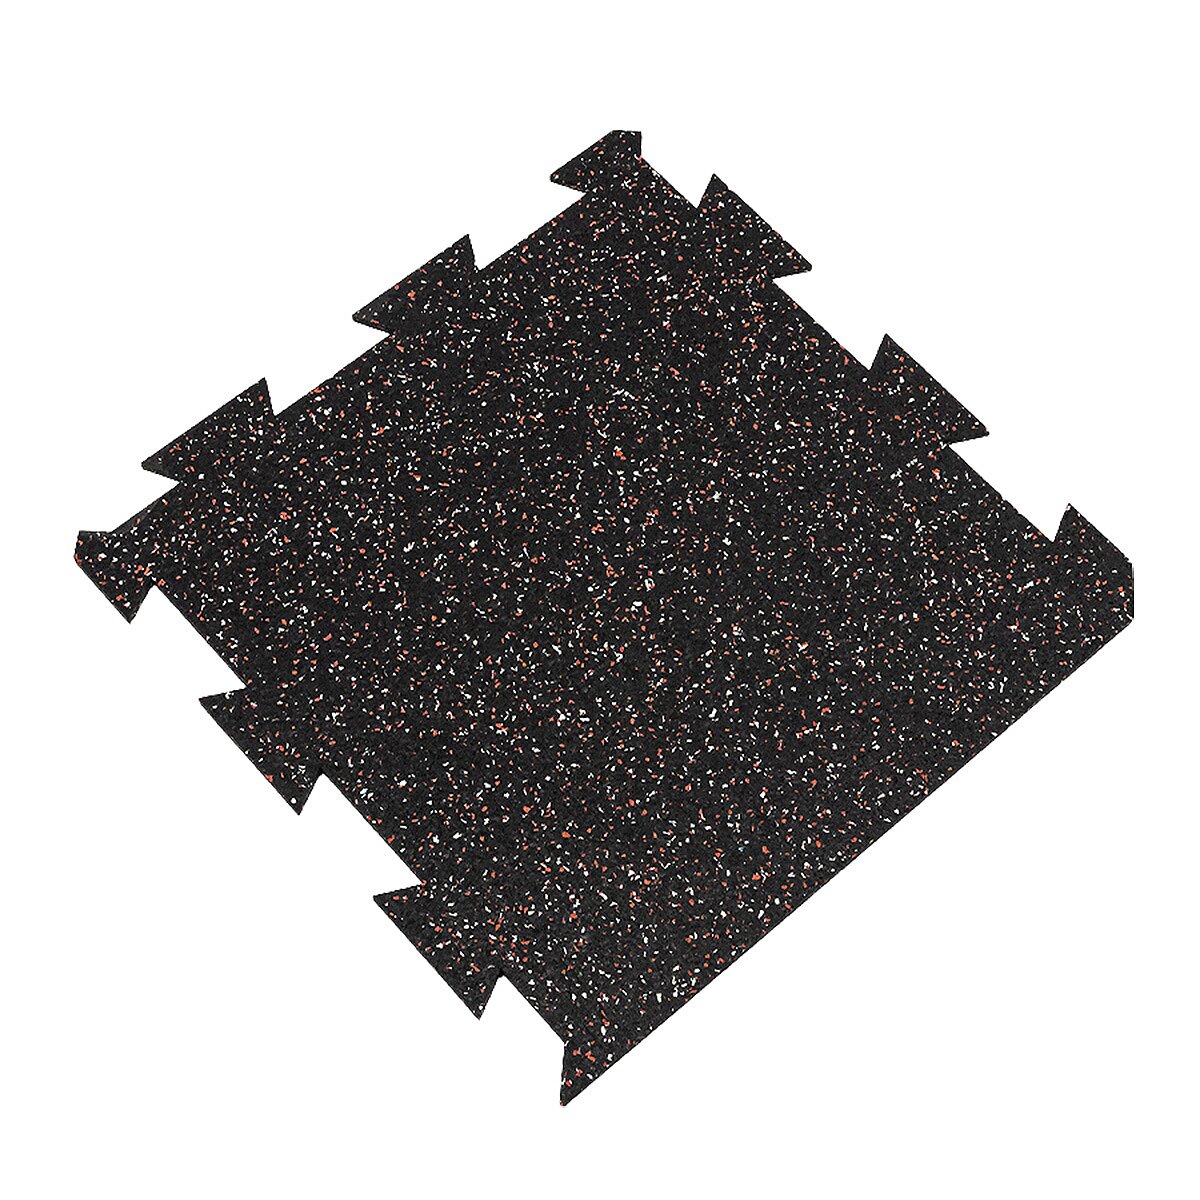 Čierno-bielo-červená podlahová guma (puzzle - okraj) FLOMA FitFlo SF1050 - dĺžka 50 cm, šírka 50 cm, výška 1,6 cm